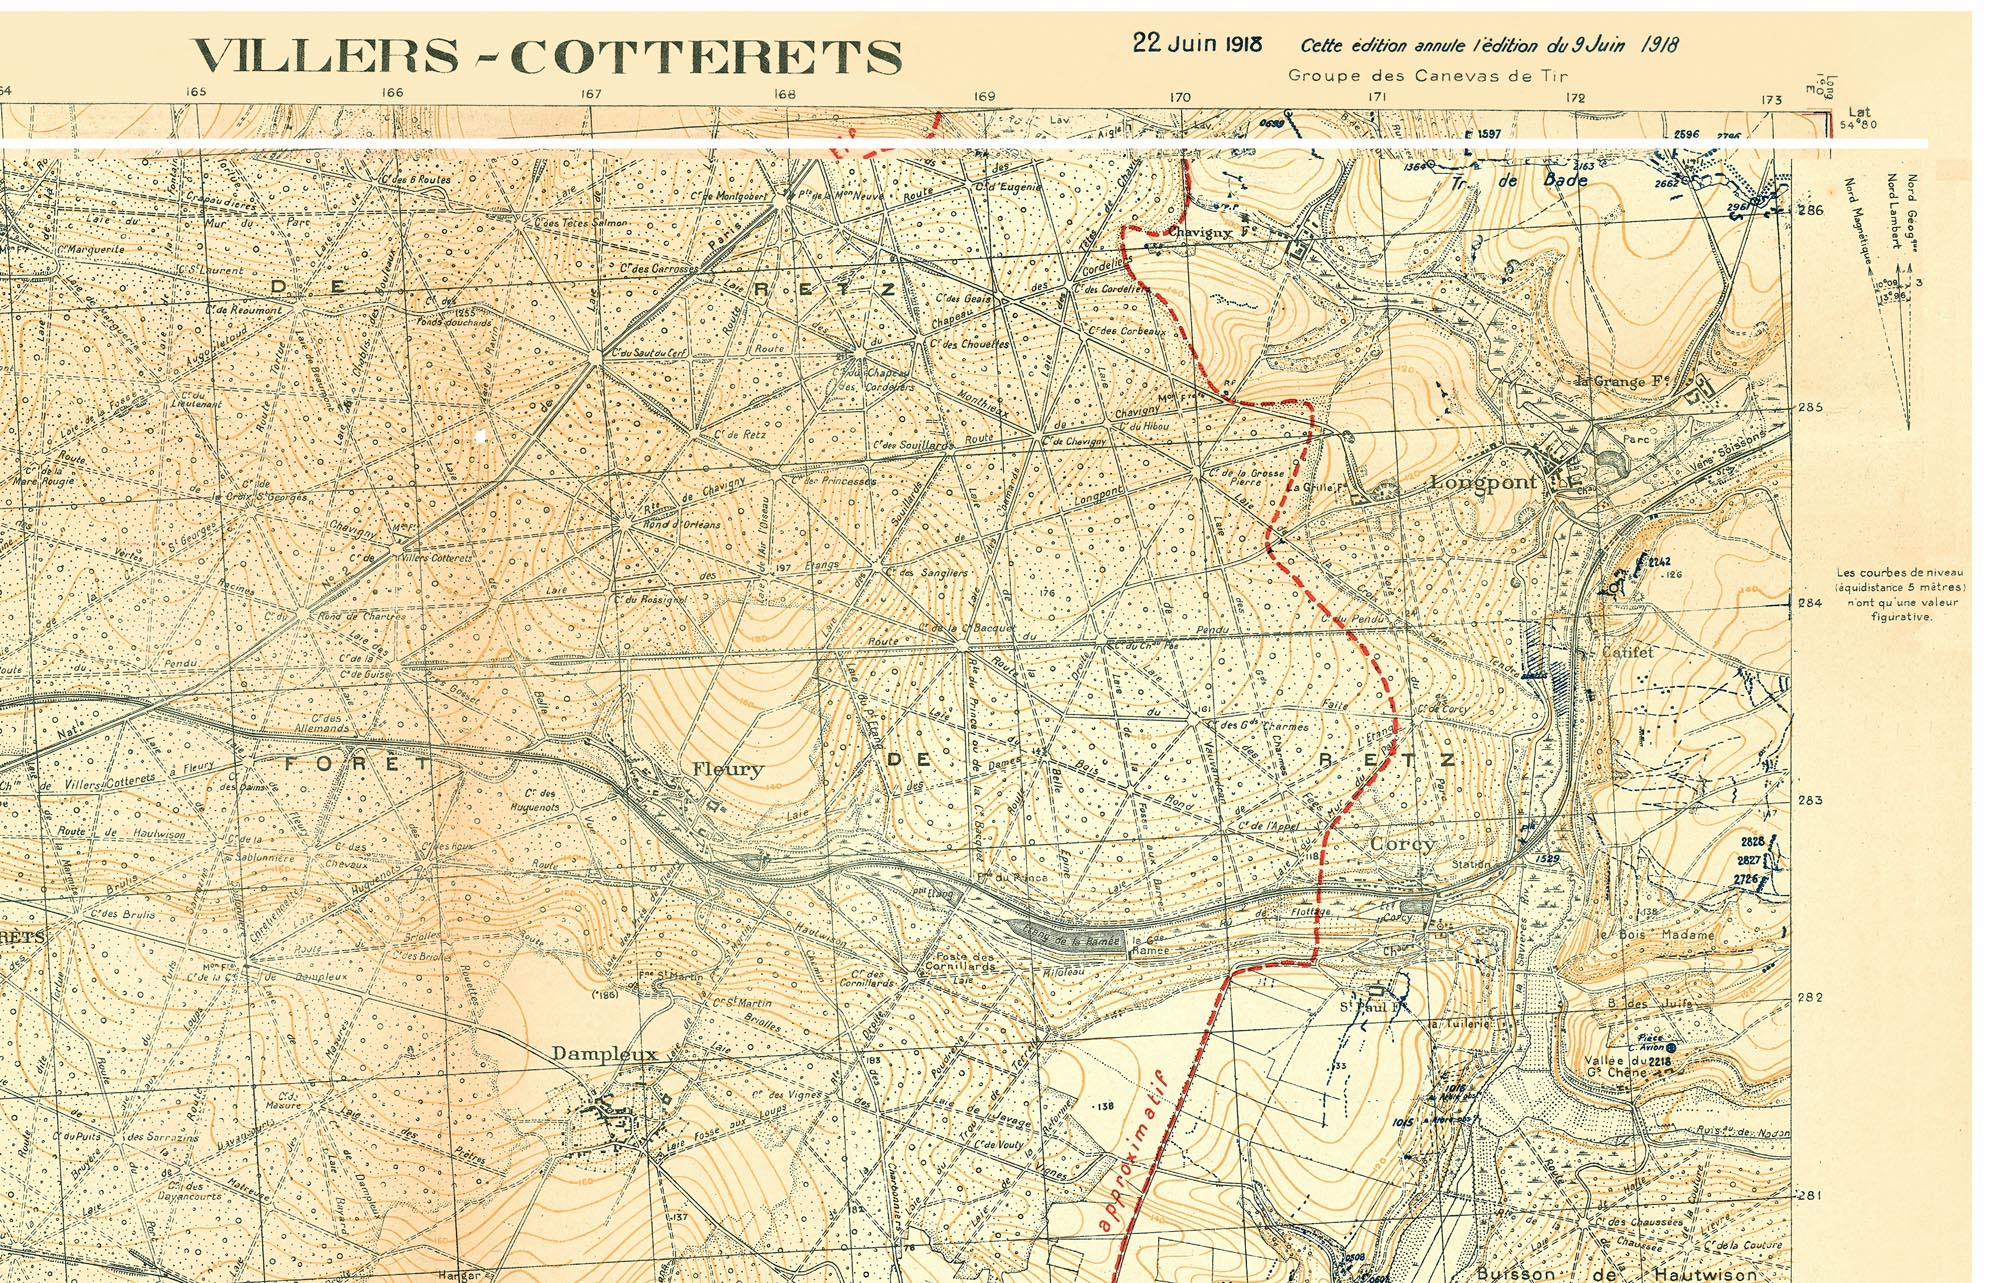 1-20° - Villers-Cotterets 1a.jpg